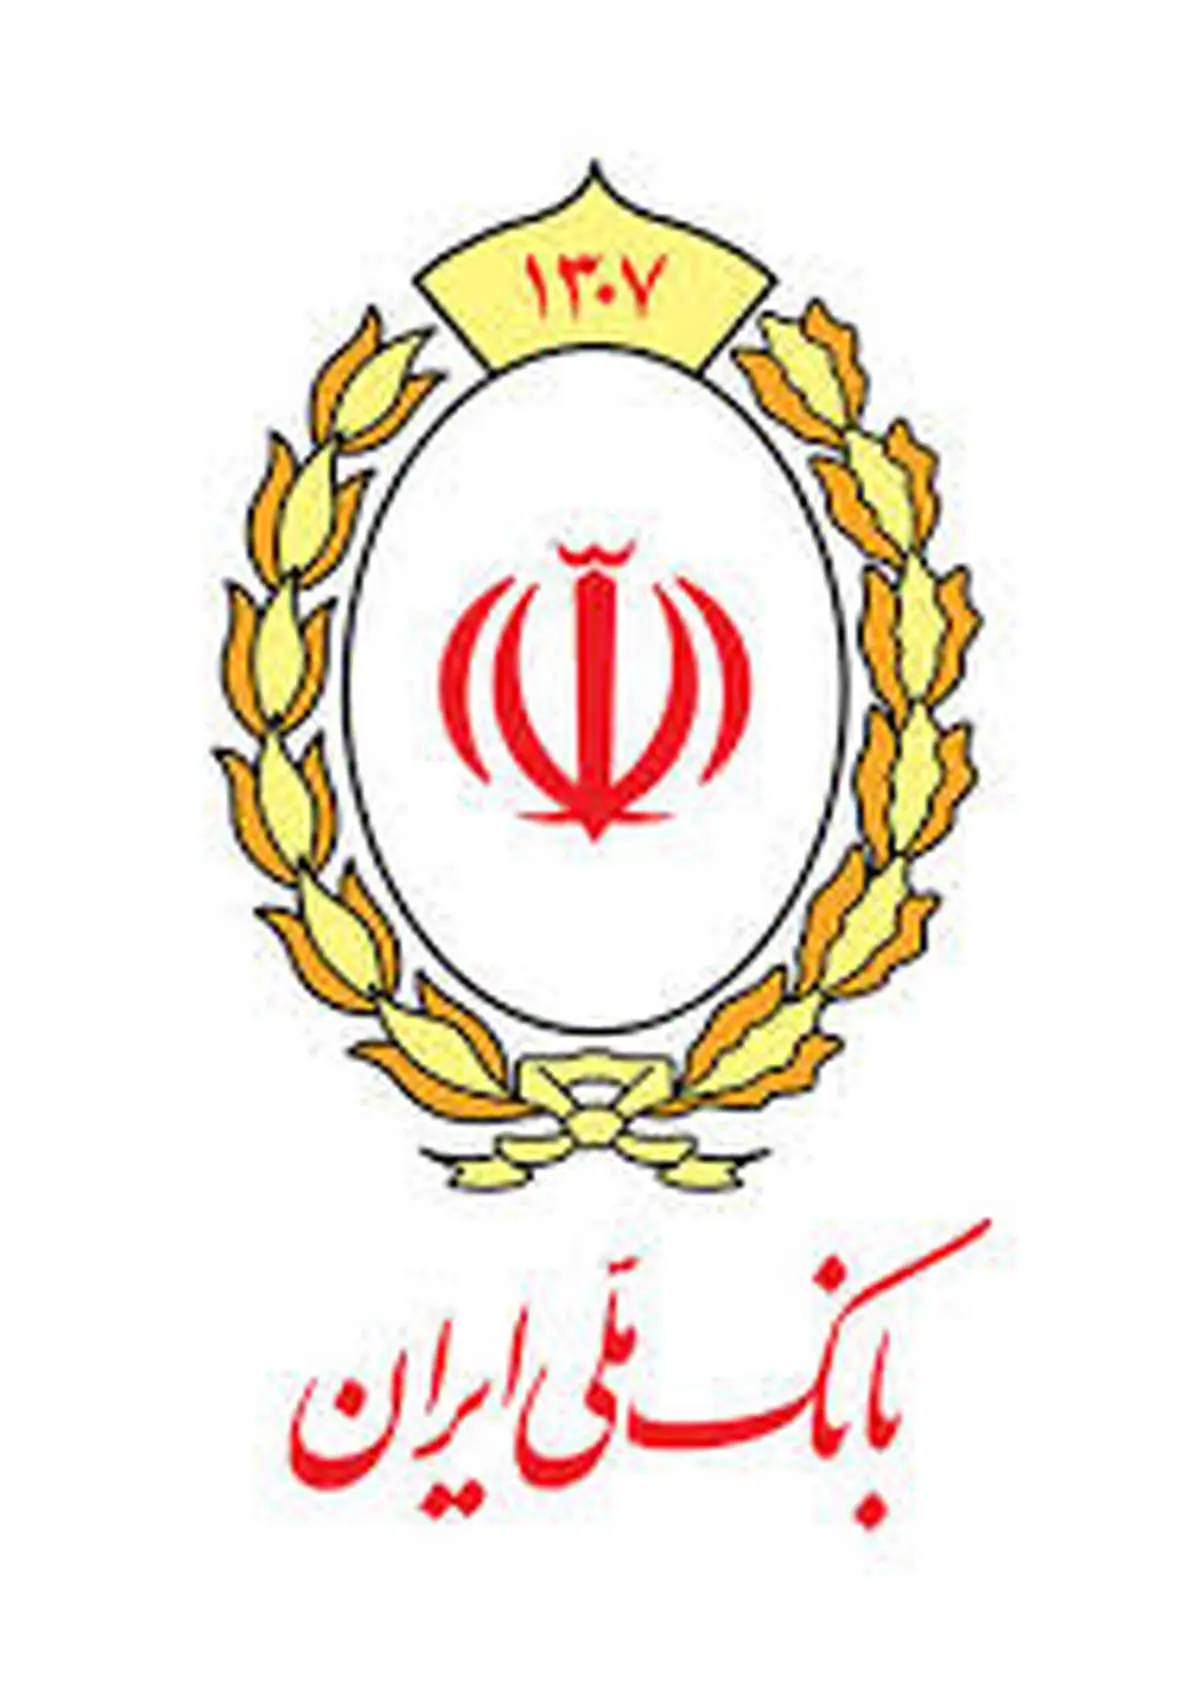 اعطای تسهیلات به یک هزار و 800 بنگاه اقتصادی کوچک و متوسط توسط بانک ملی ایران

